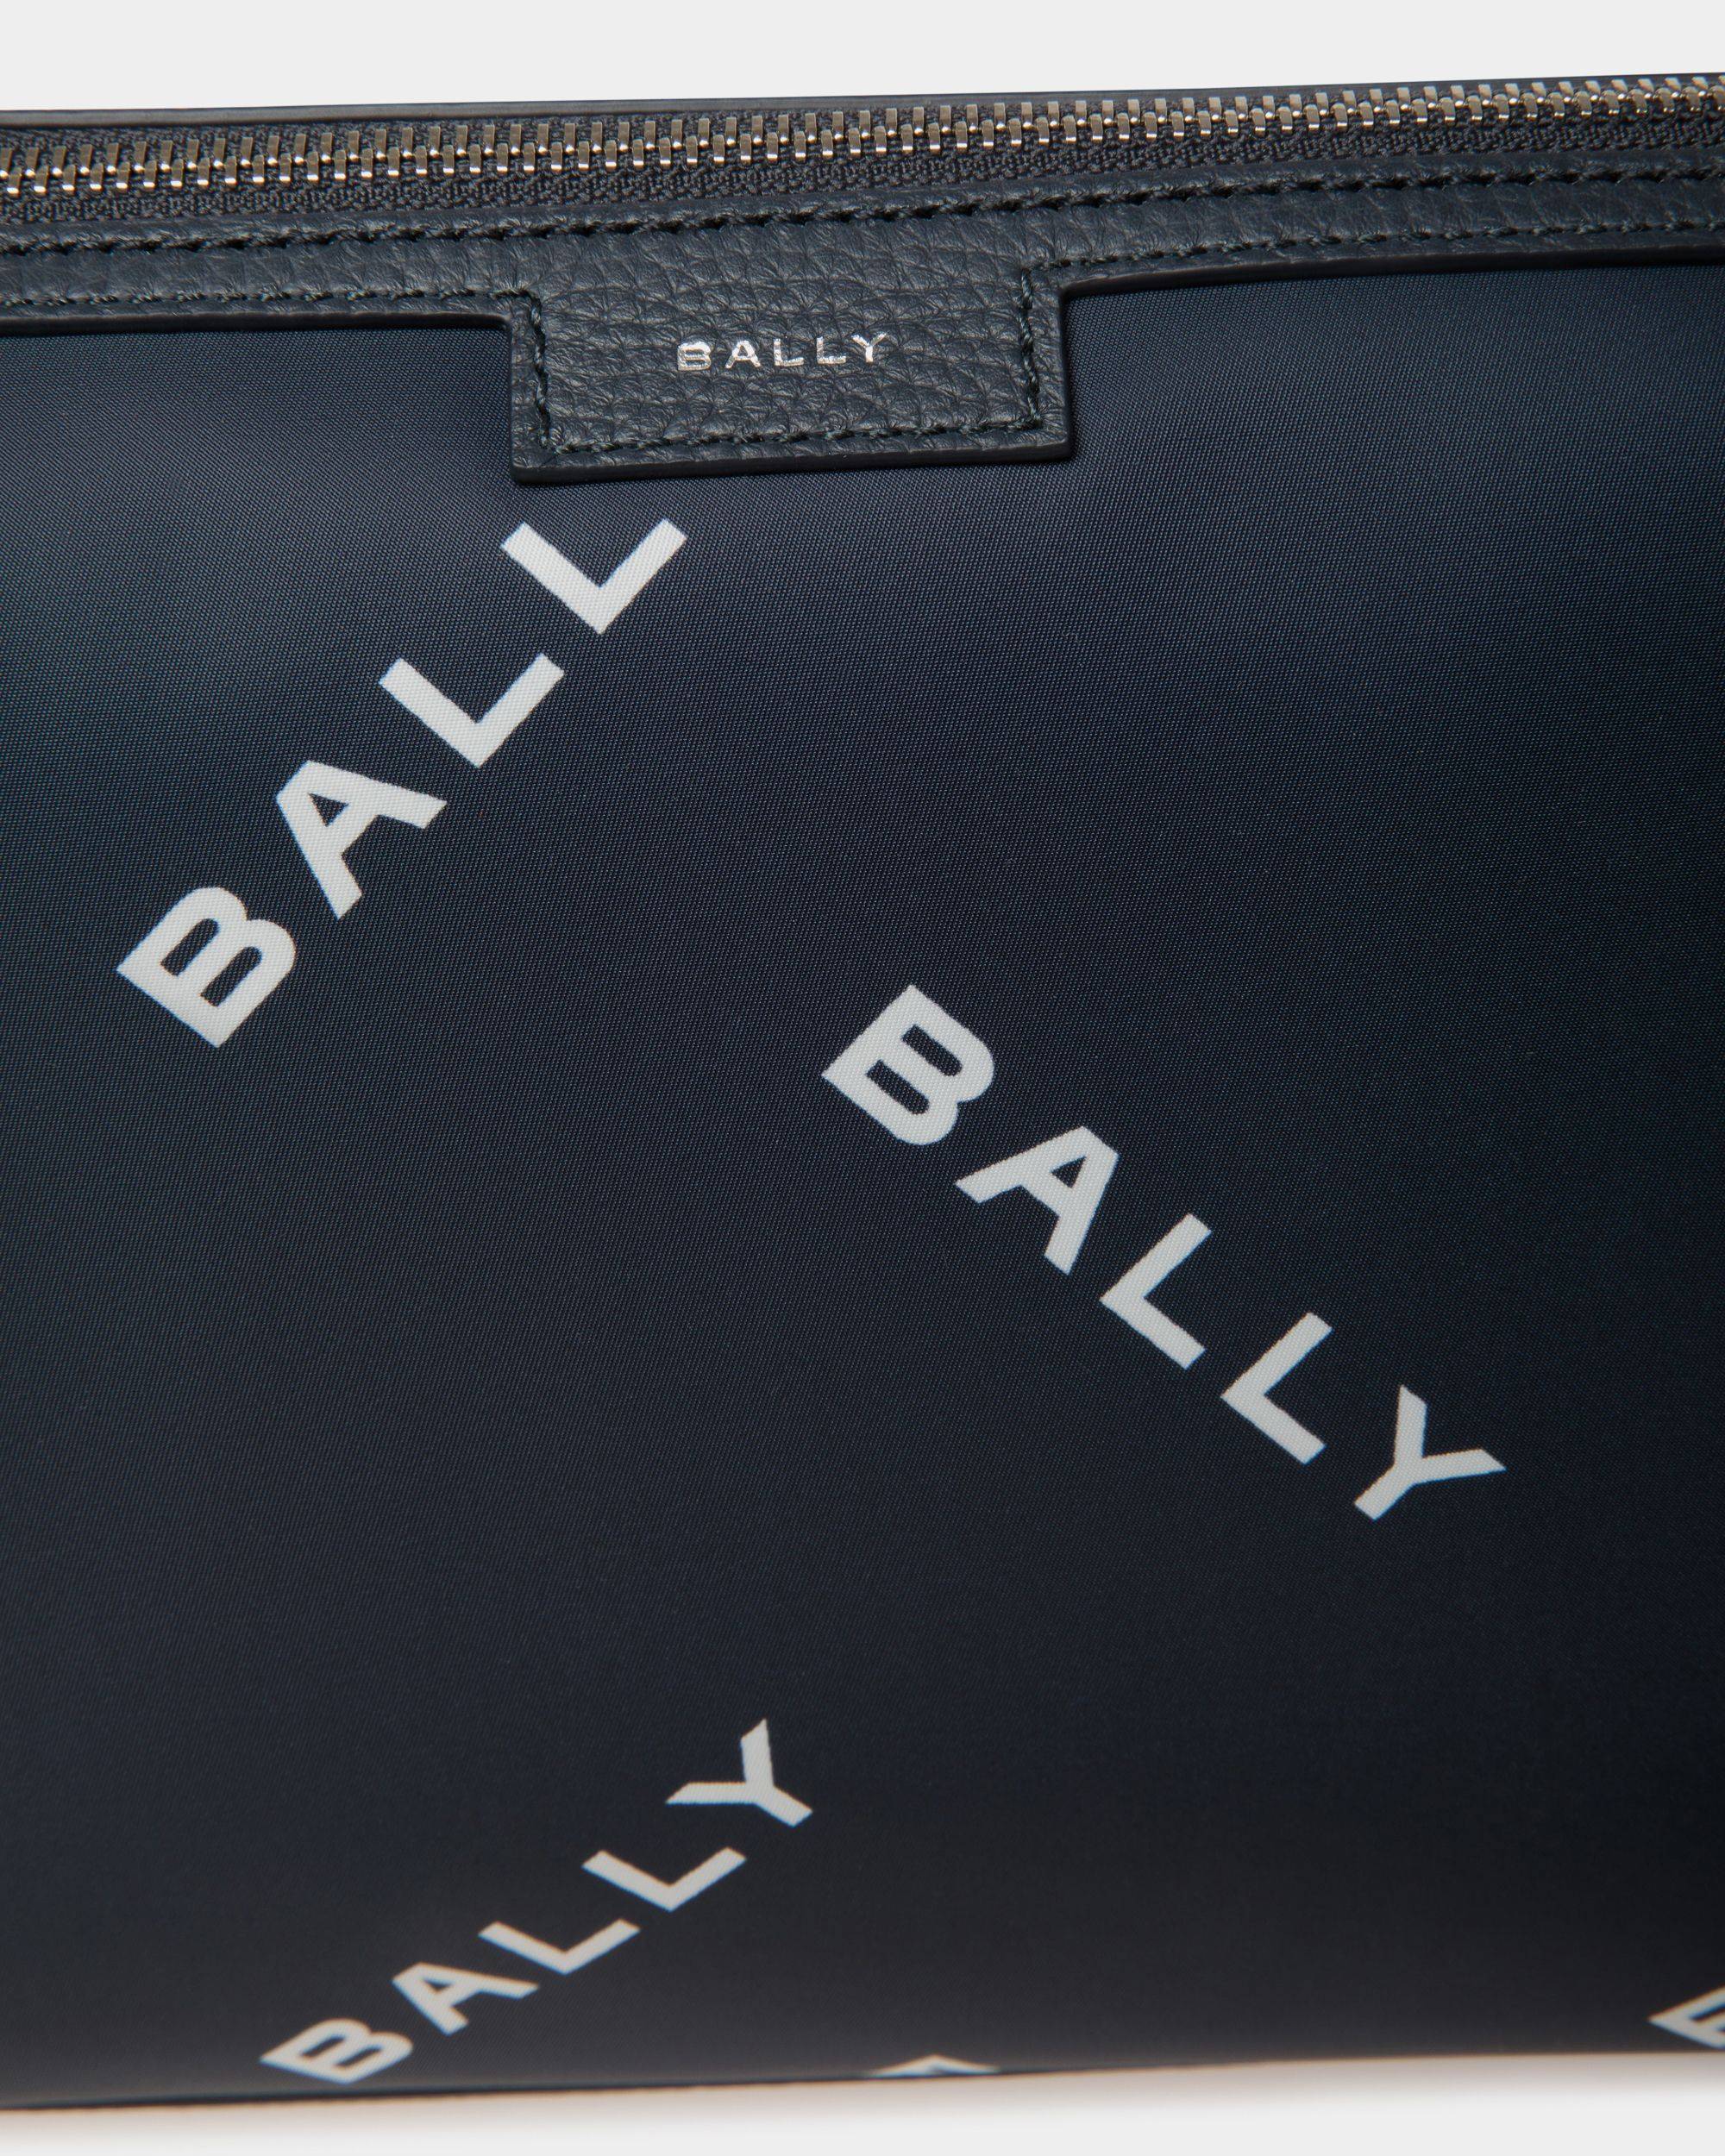 Code | Men's Small Messenger Bag in Blue Printed Nylon | Bally | Still Life Detail